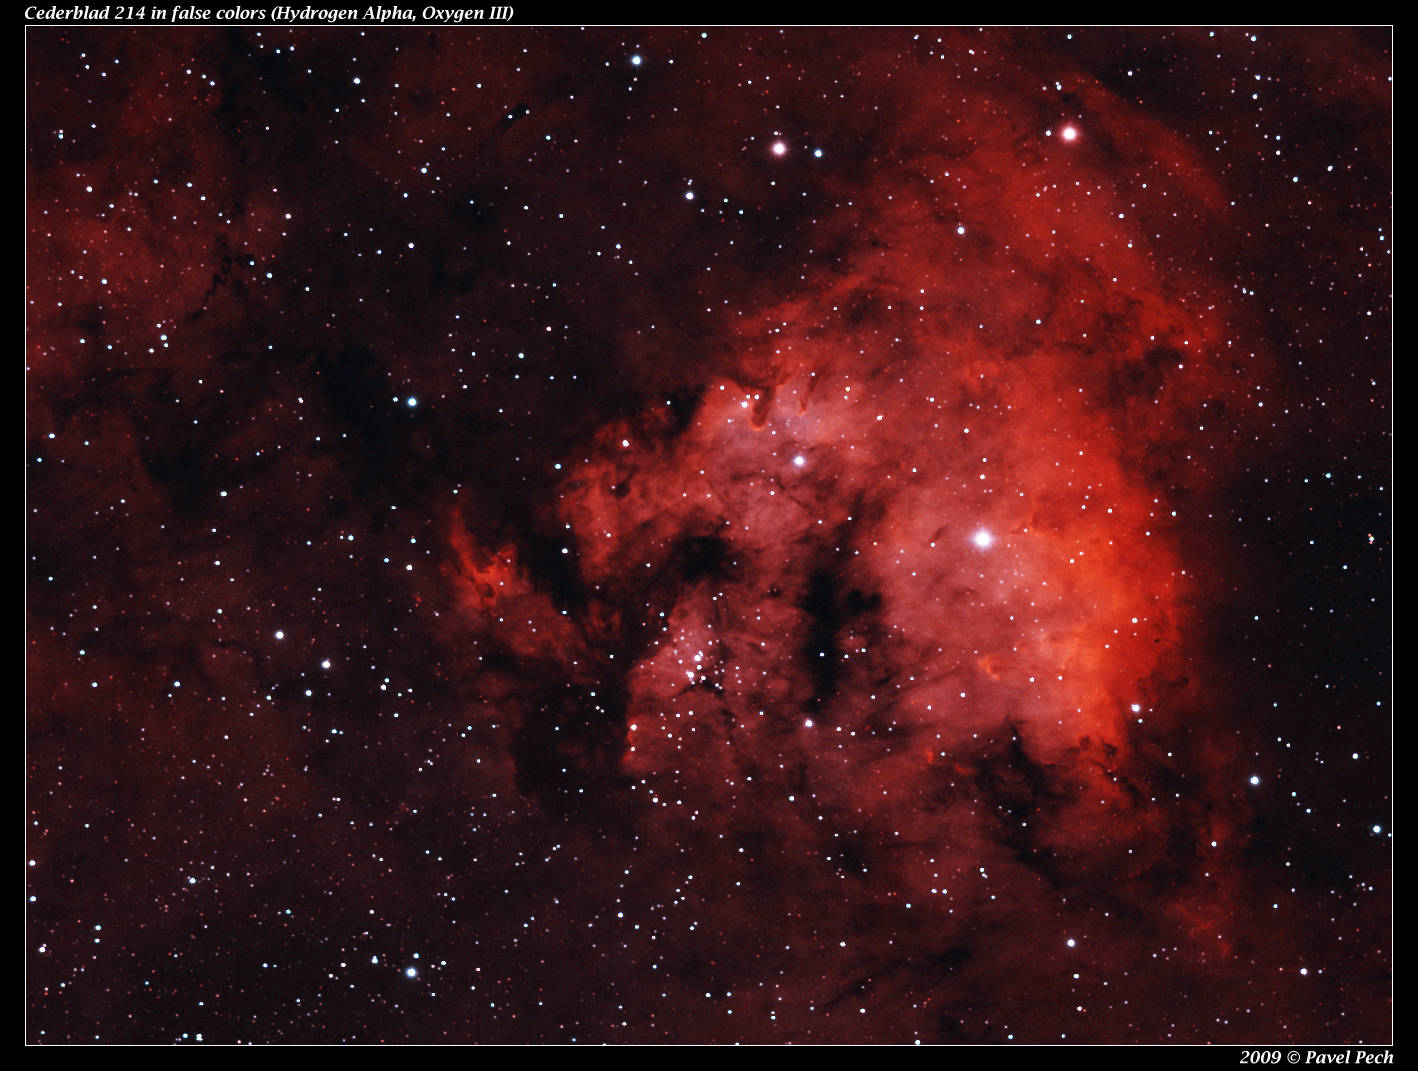 Cederblad 214 (Ced214), NGC7822